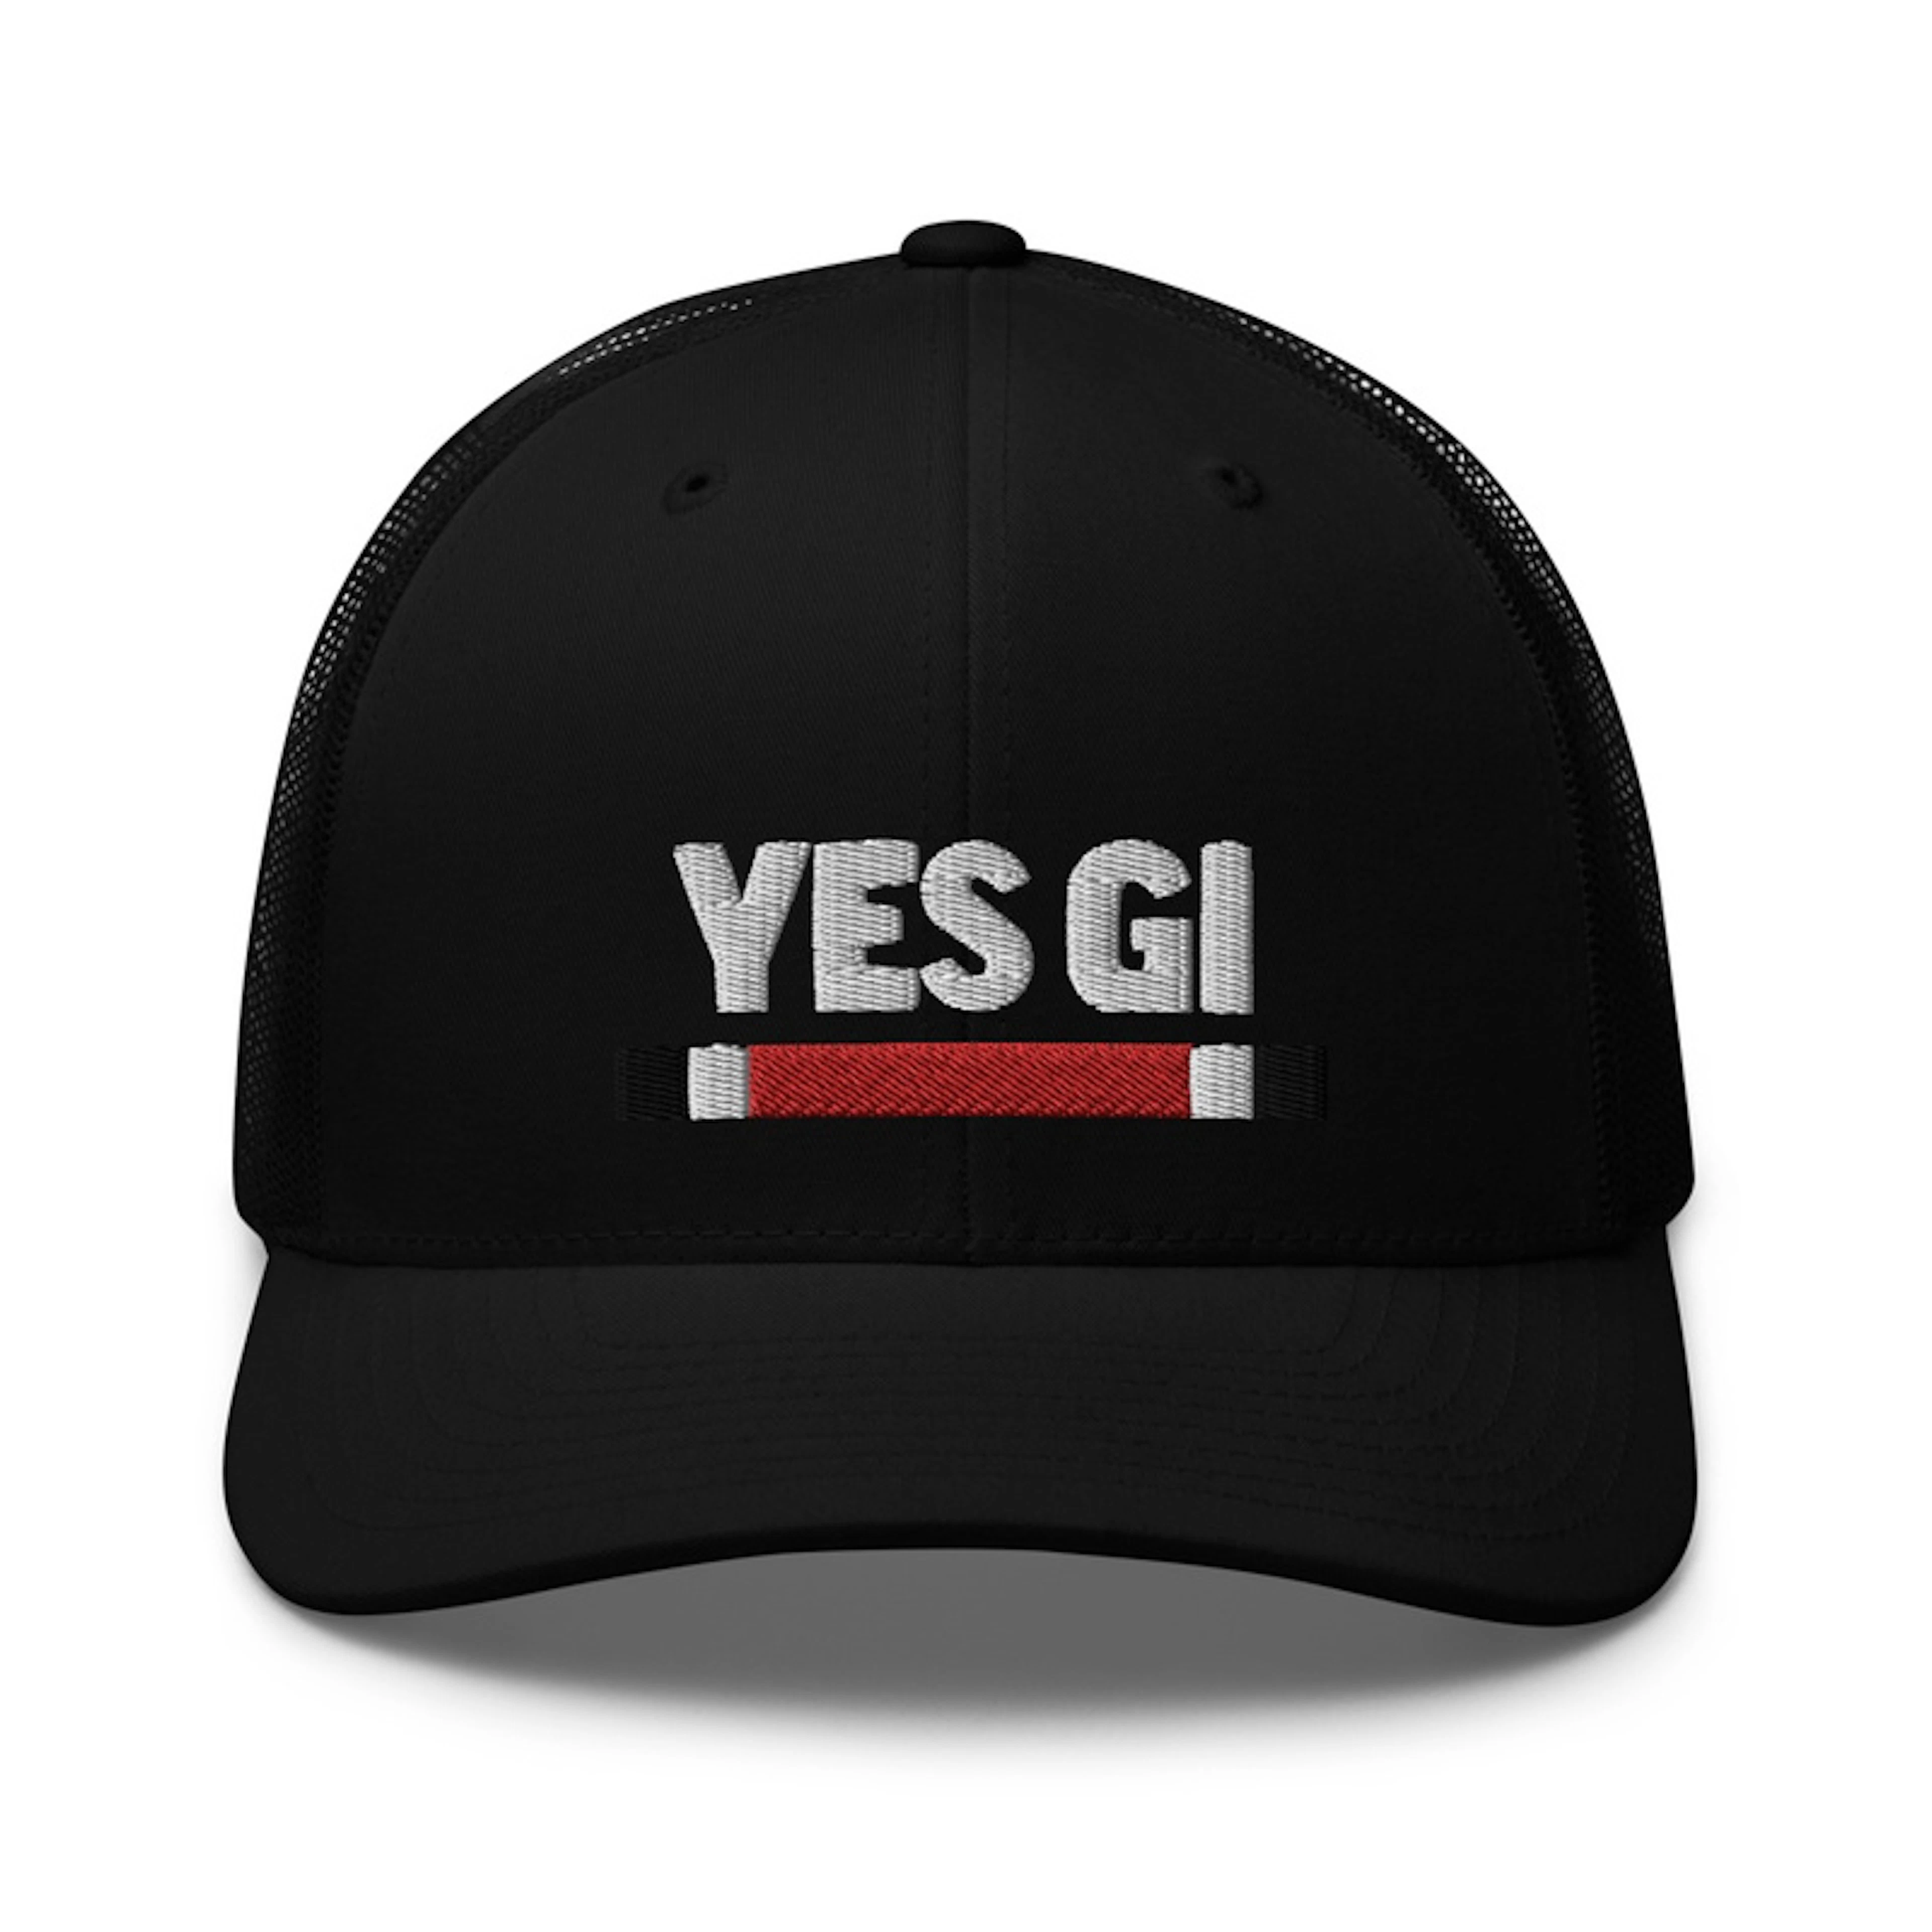 Yes Gi Trucker Hat 